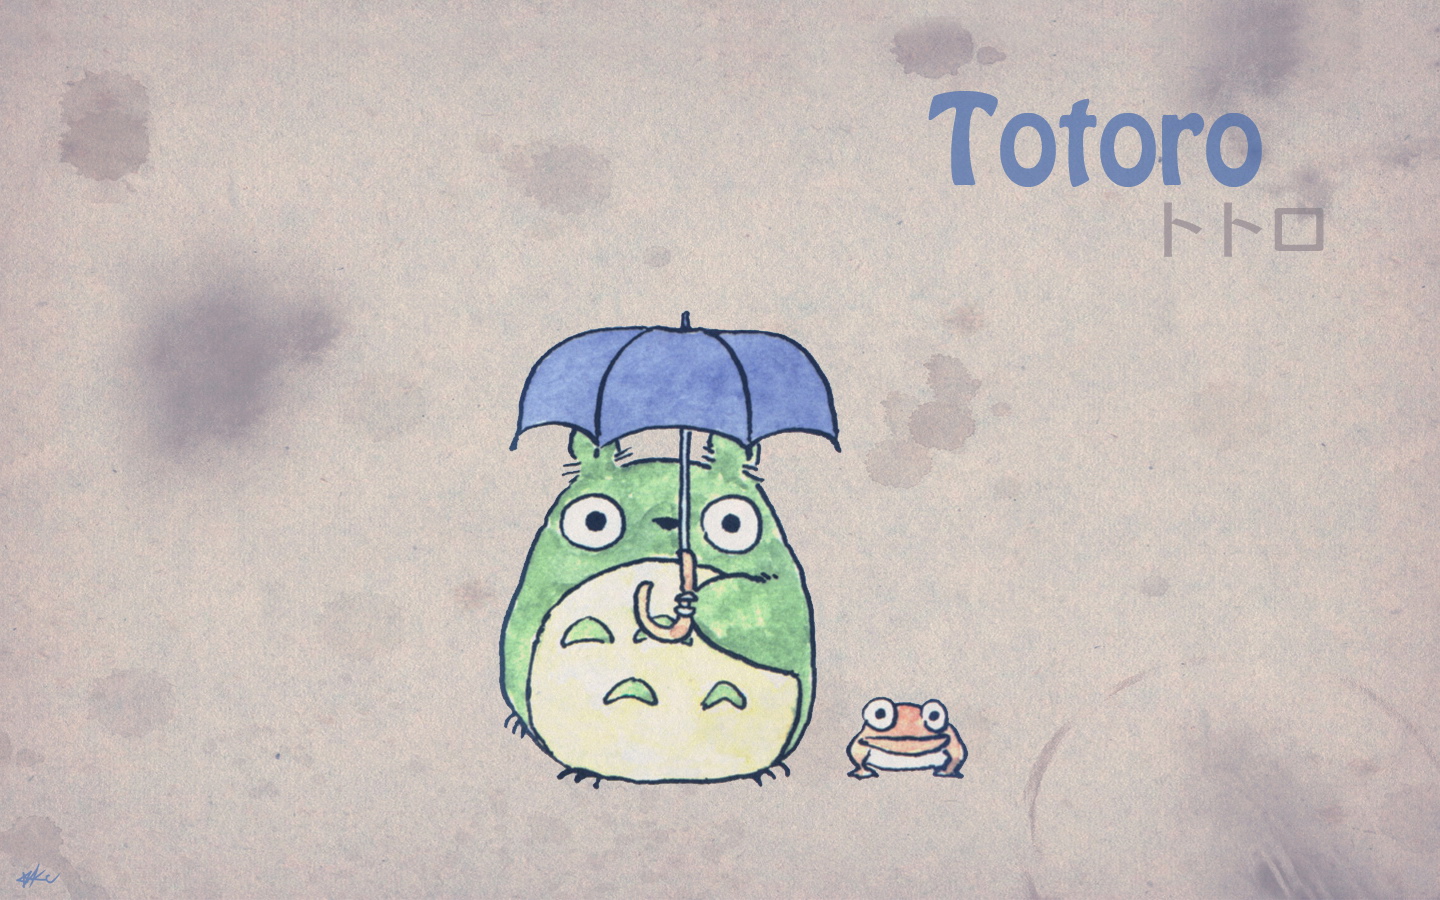 壁纸1440x900Totoro 龙猫 手绘简约版 壁纸2壁纸 Totoro（龙猫）壁纸 Totoro（龙猫）图片 Totoro（龙猫）素材 绘画壁纸 绘画图库 绘画图片素材桌面壁纸